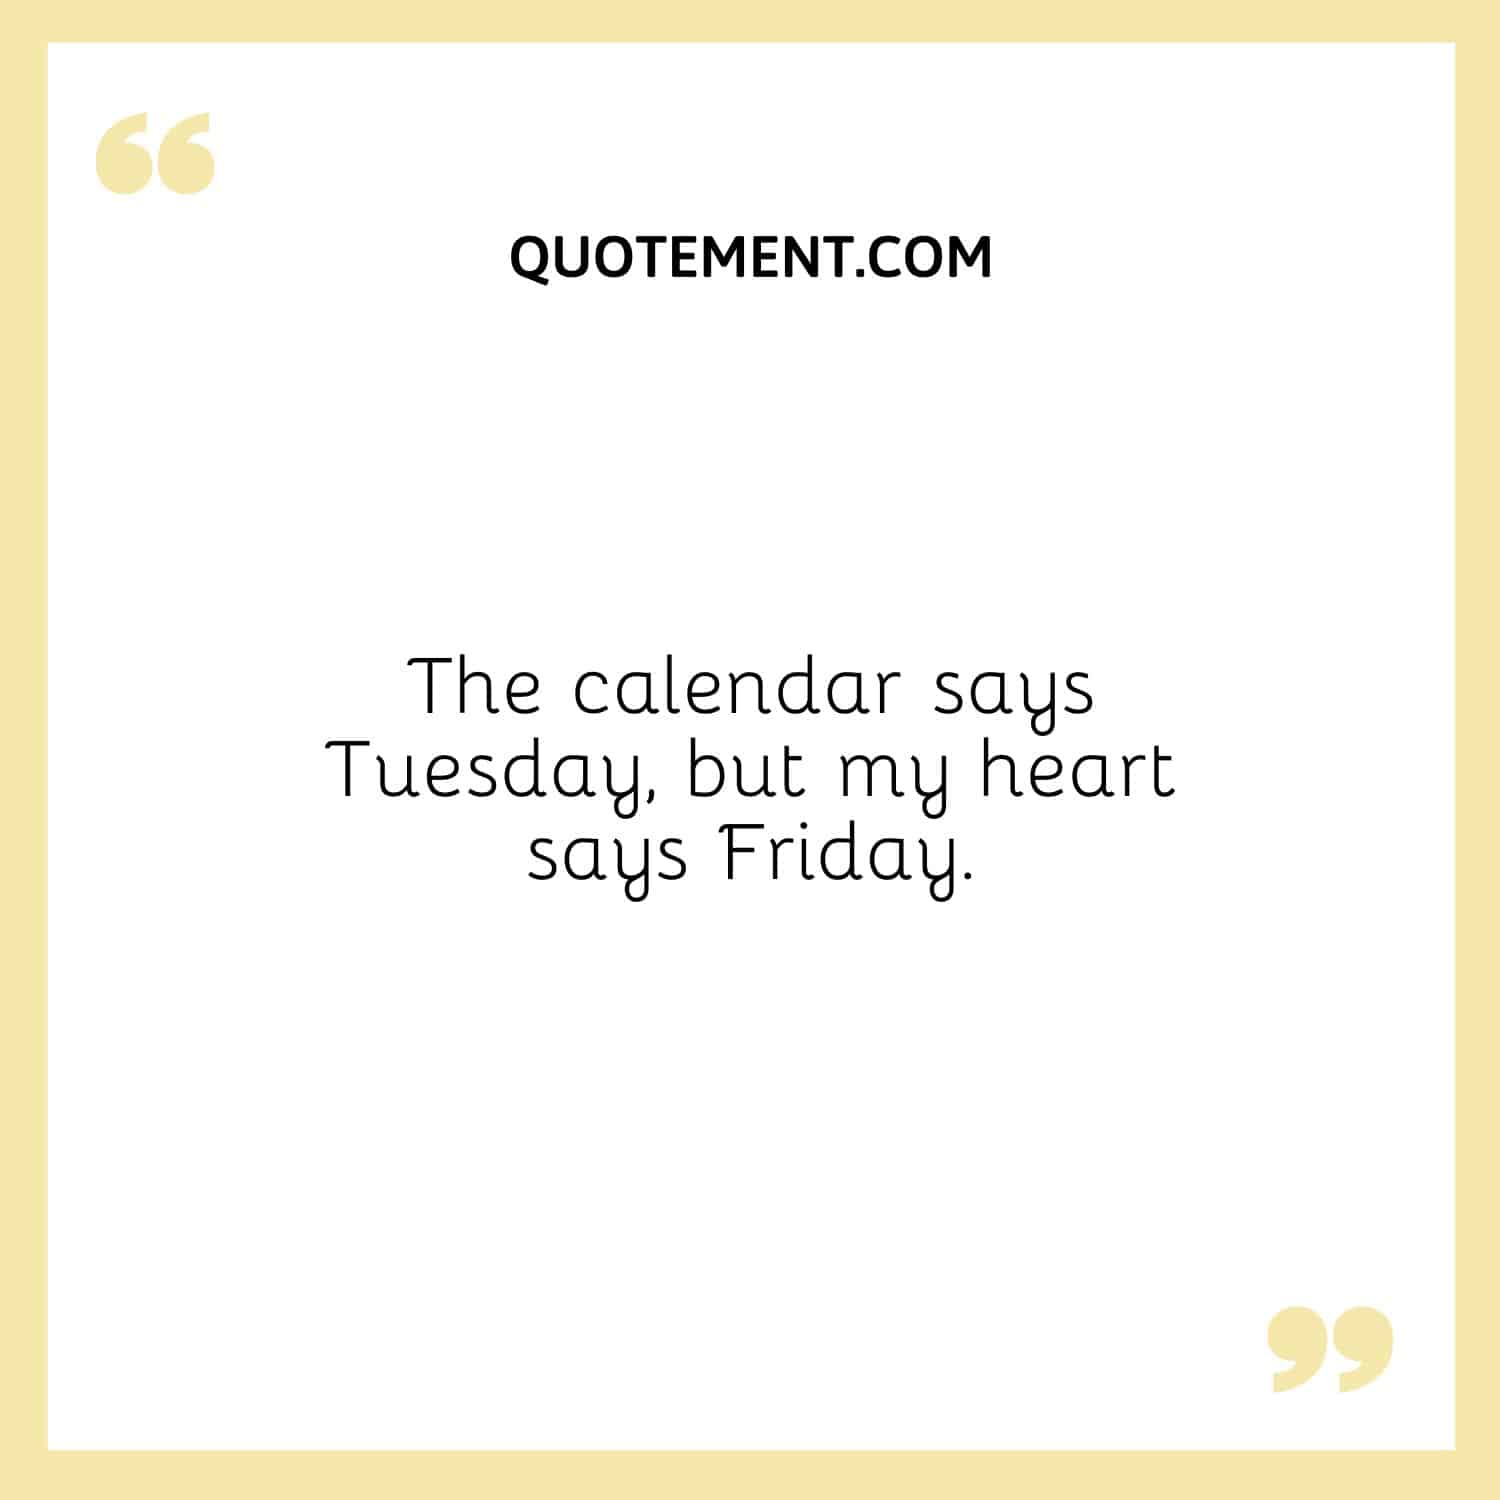 The calendar says Tuesday, but my heart says Friday.